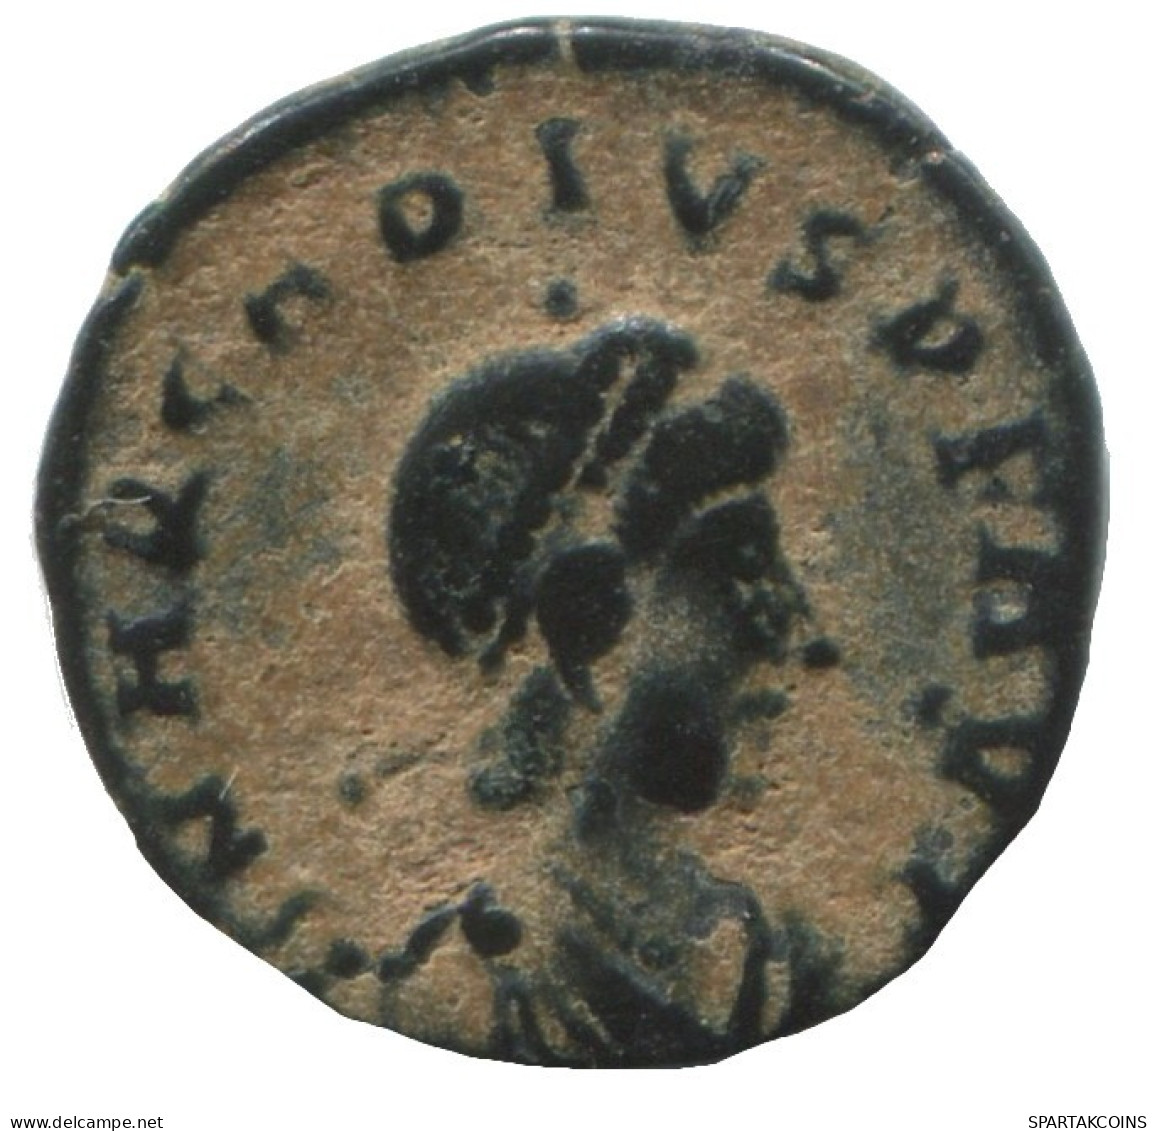 VALENTINIAN II CYZICUS SMKA AD375-392 SALVS REI-PVBLICAE 0.9g/14mm #ANN1333.9.E.A - La Fin De L'Empire (363-476)